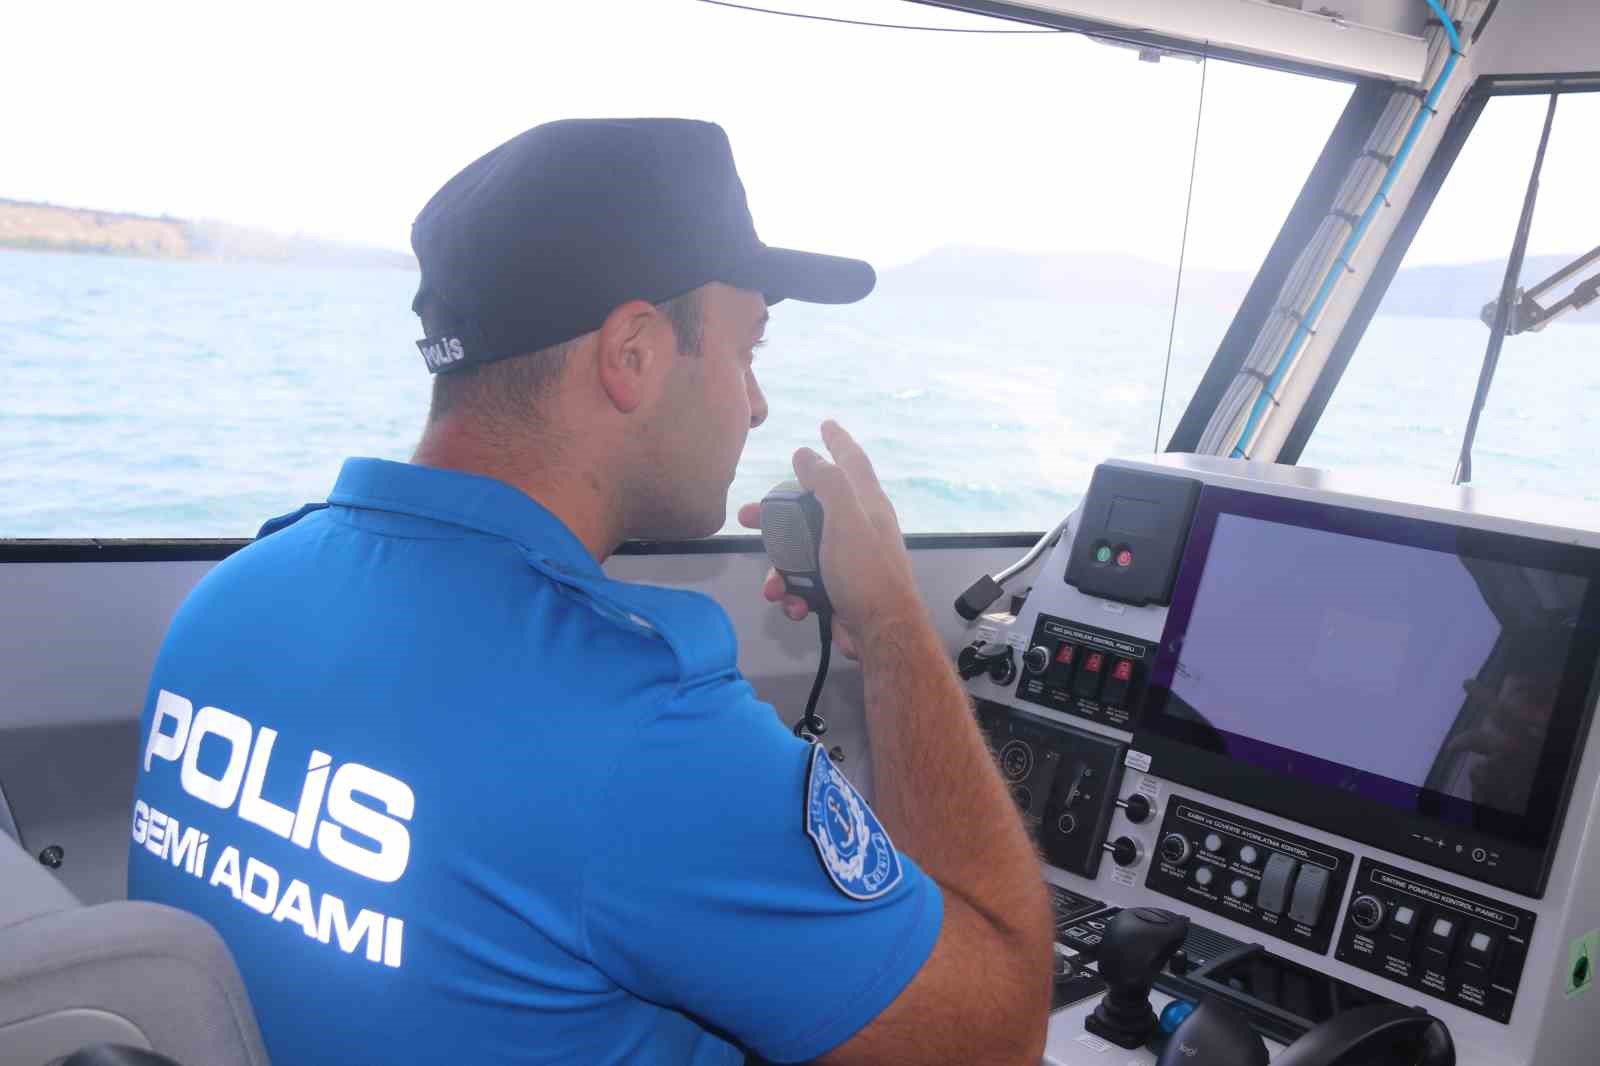 Polis botu Van Gölü’nde kaçak avlanmaya izin vermiyor